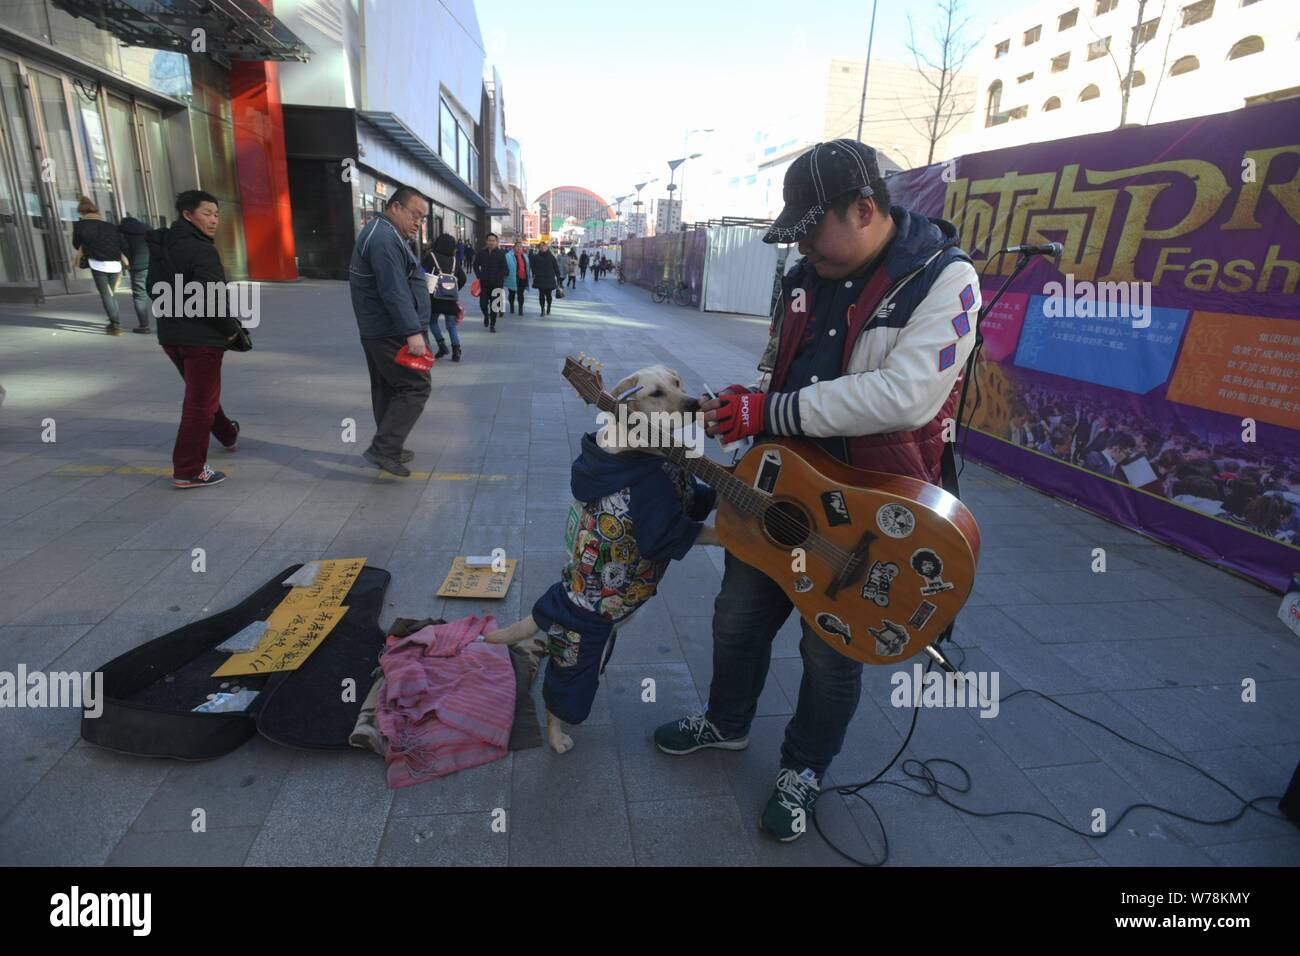 Le Labrador portant un manteau avec un QR code de service de paiement  mobile WeChat Payer à quémander de l'argent est photographié avec son  propriétaire Tao Tao, un chanteur de rue Photo